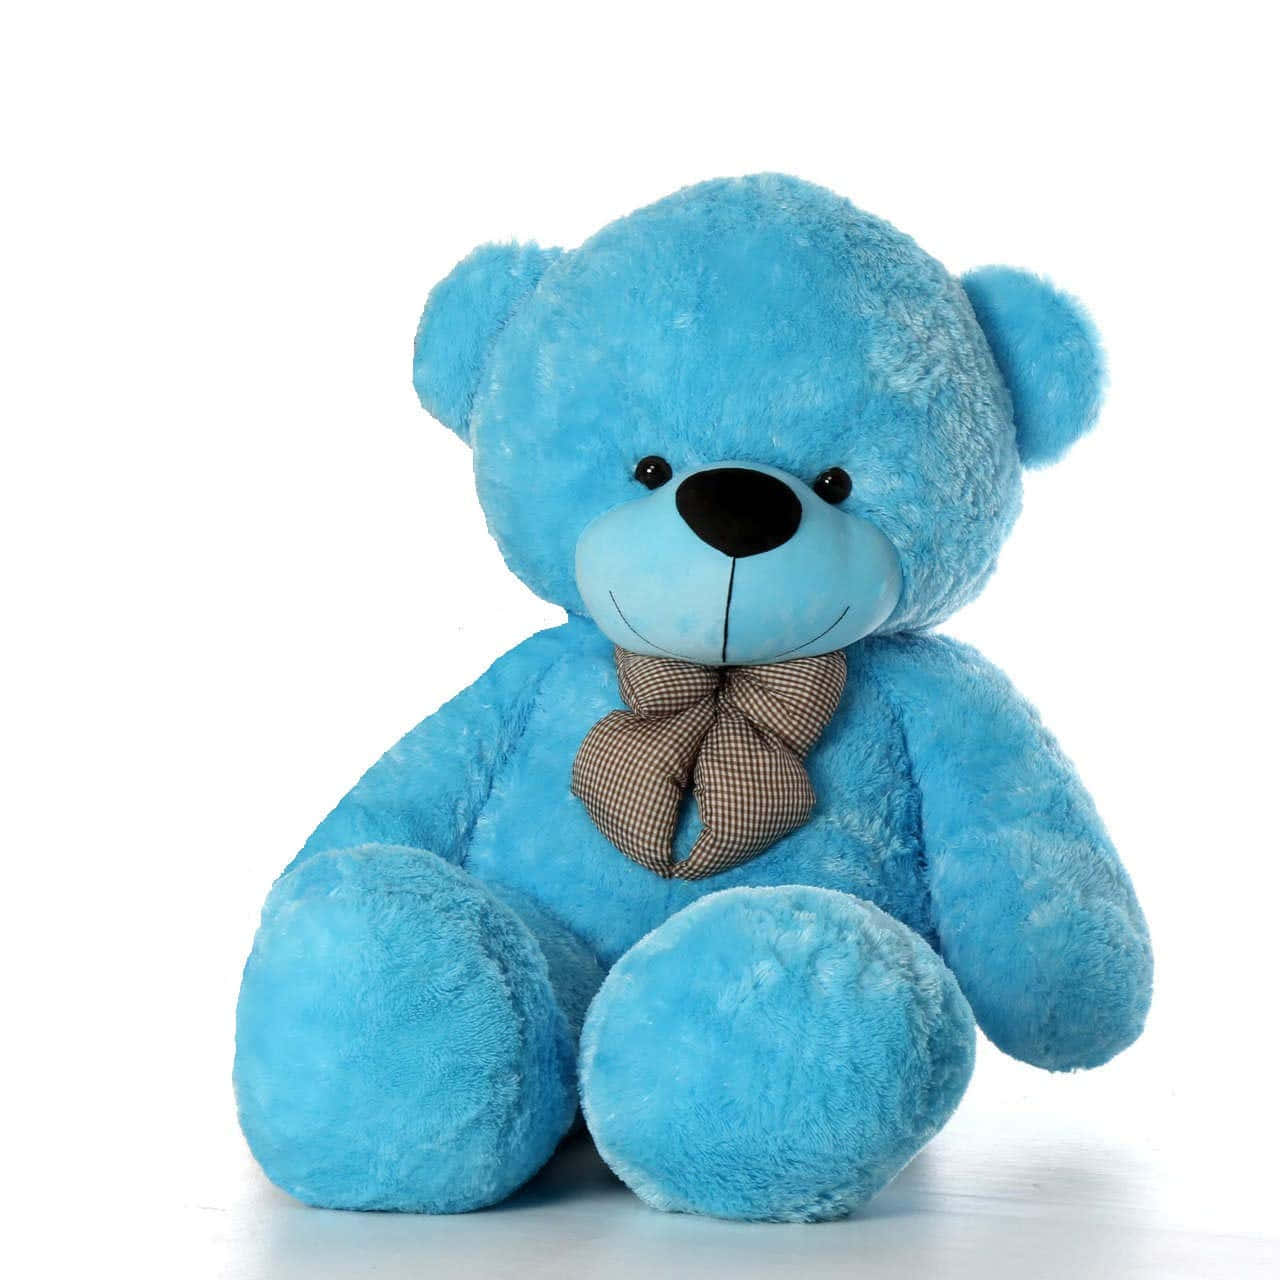 Finden Kærlig Og Trøstende Følgesvend Med Denne Elskede Teddybjørn!